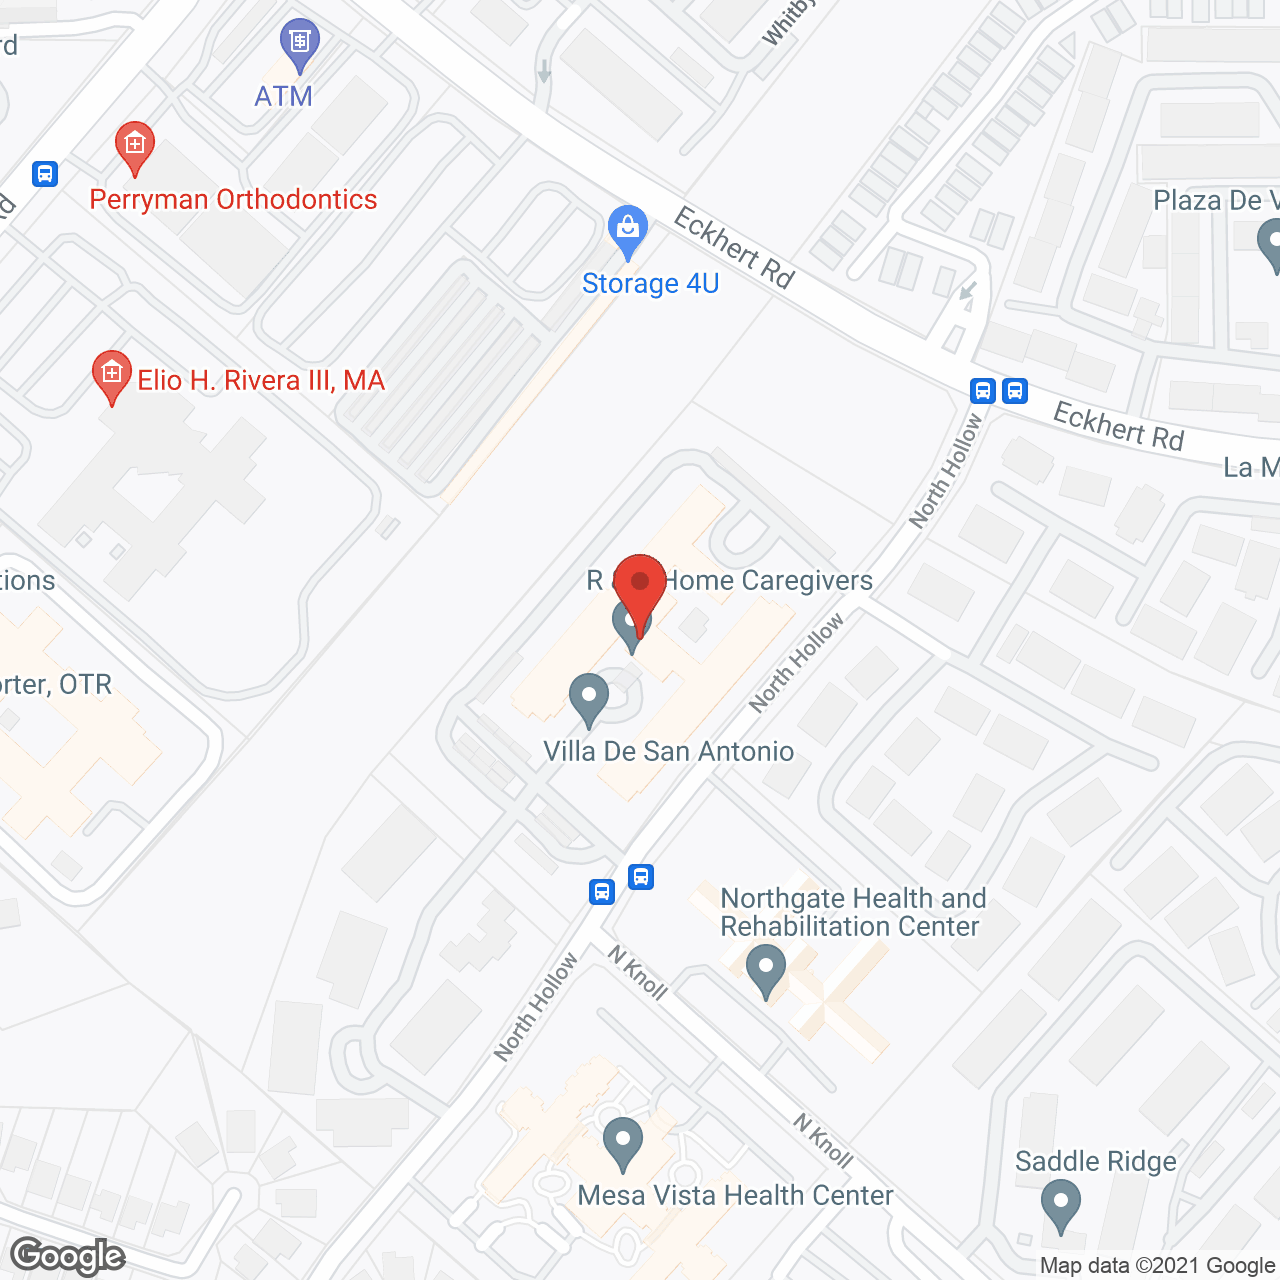 Villa de San Antonio in google map